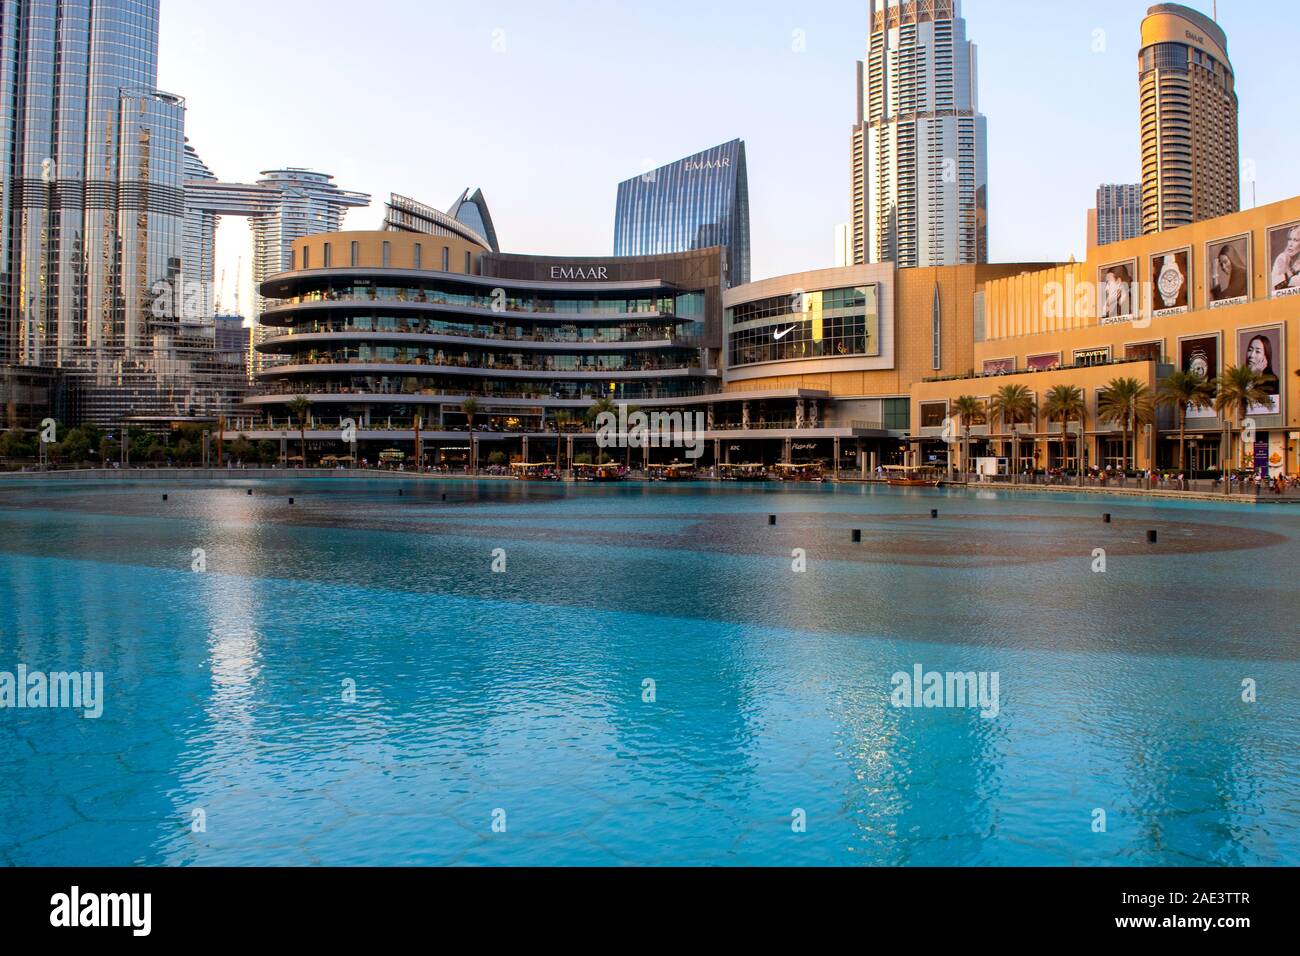 Dubaï / Emirats Arabes Unis - 5 novembre, 2019 : le plus grand centre commercial du monde. Centre commercial de Dubaï avec des fontaines d'extérieur piscine. Banque D'Images